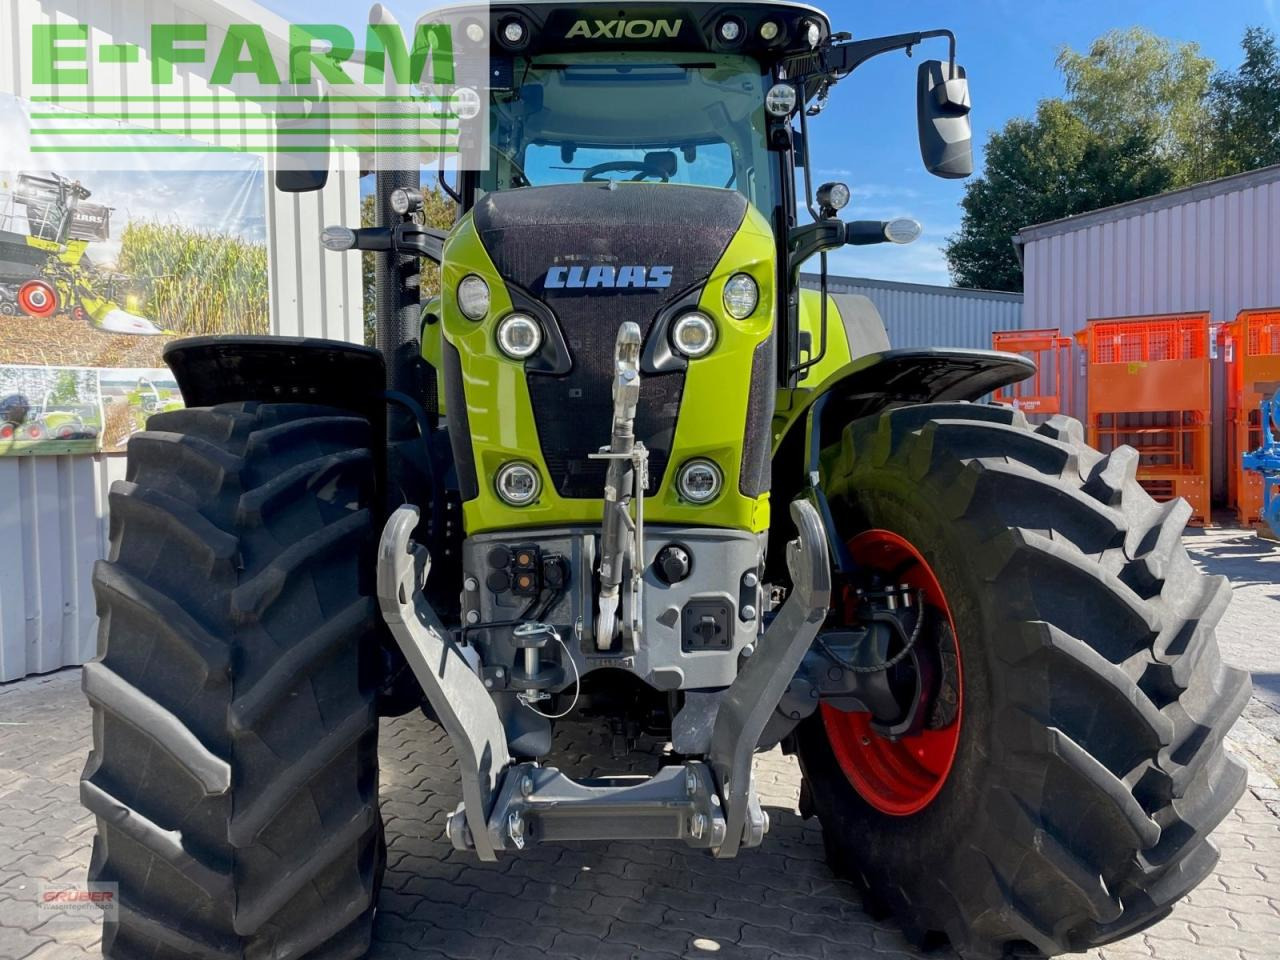 Farm tractor CLAAS axion 870 cmatic cebis CEBIS